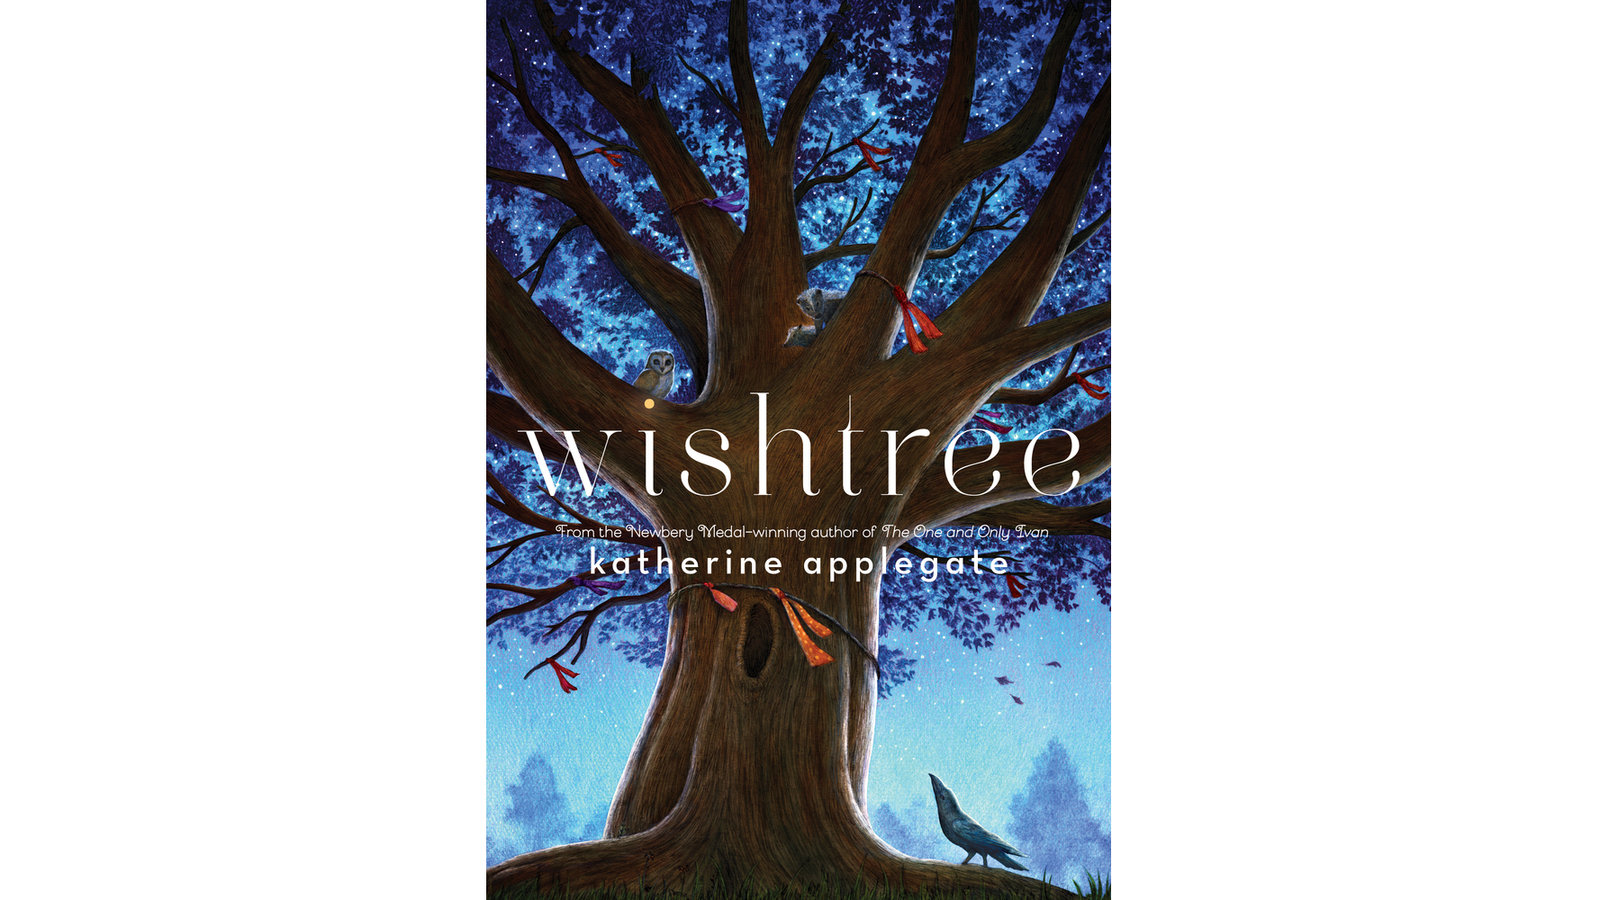 Wishtree